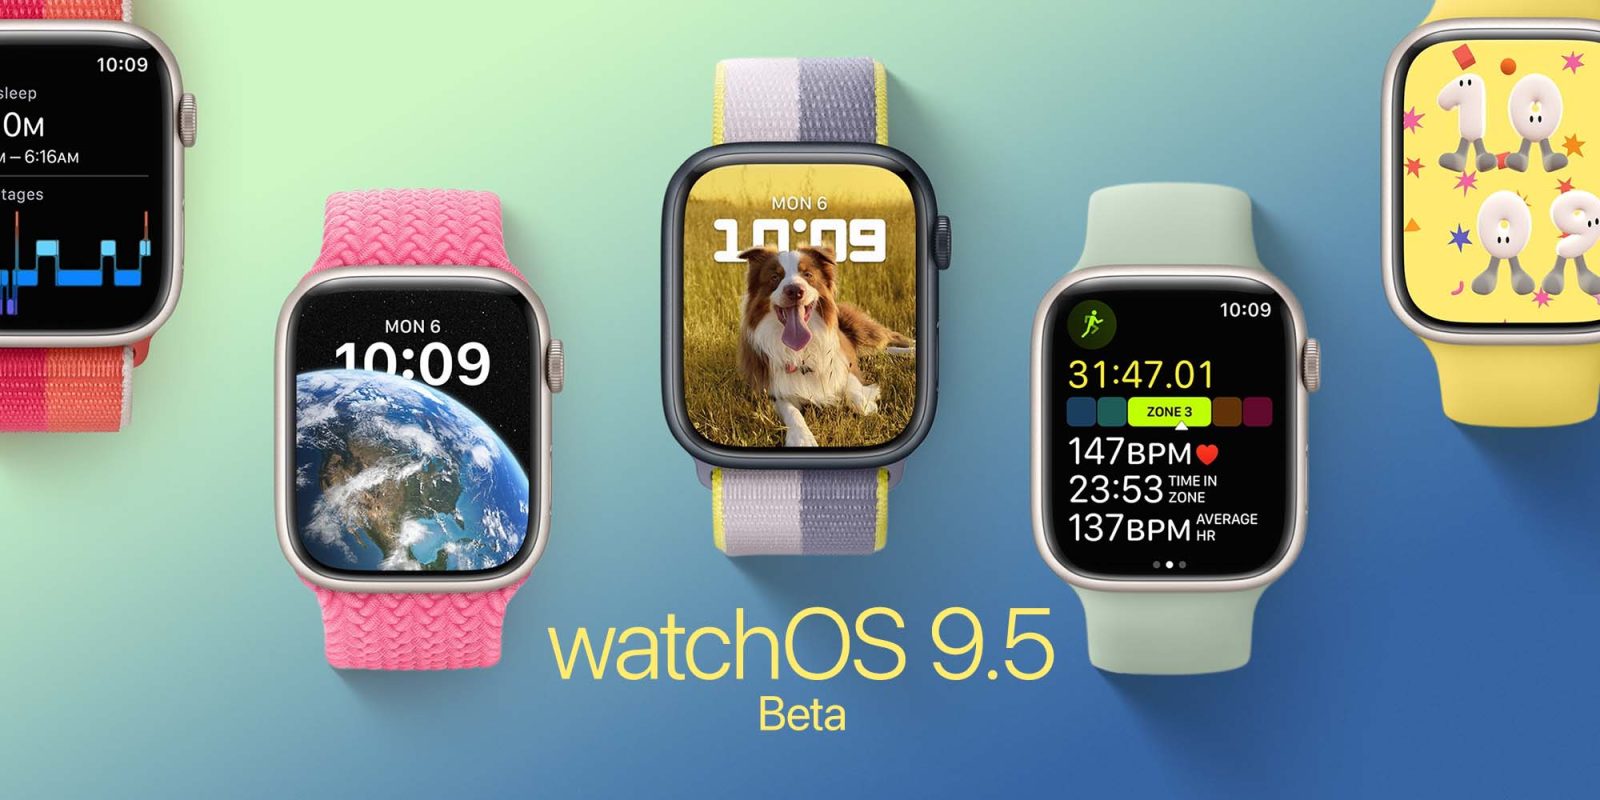 watchOS 9.5 beta